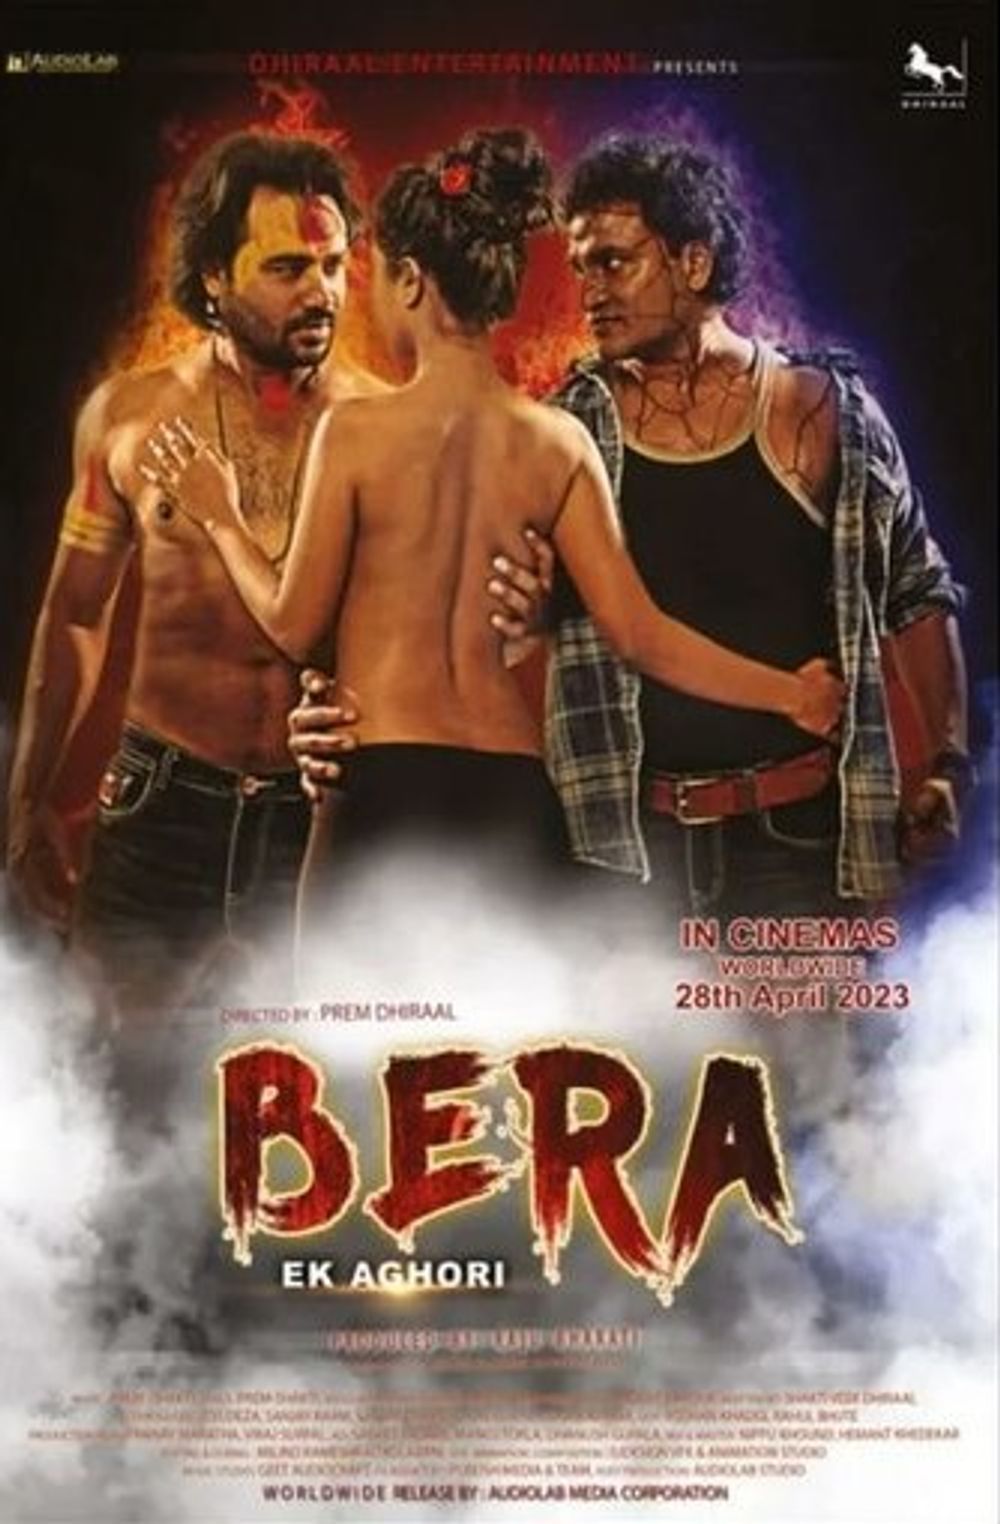 Bera-Ek Aghori Movie Review